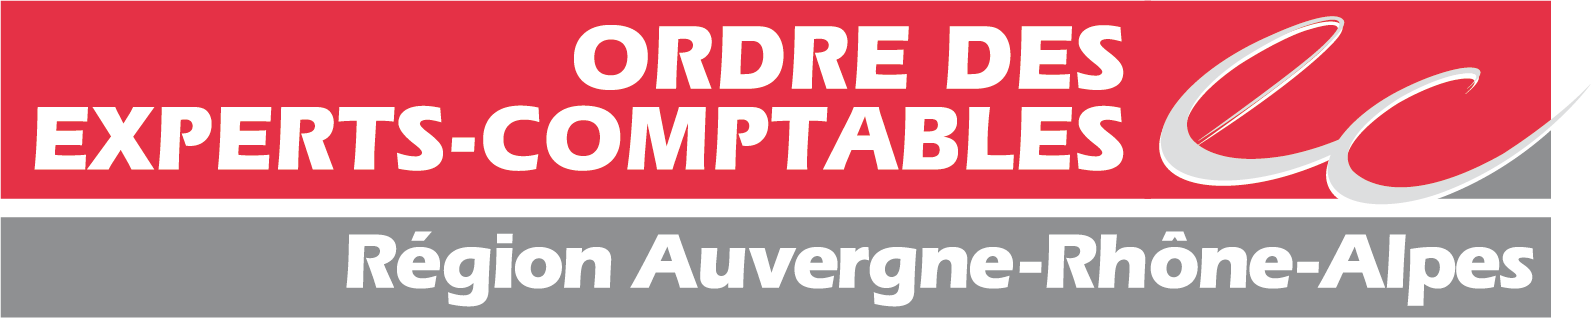 Ordre des experts-comptables région Auvergne-Rhône-Alpes